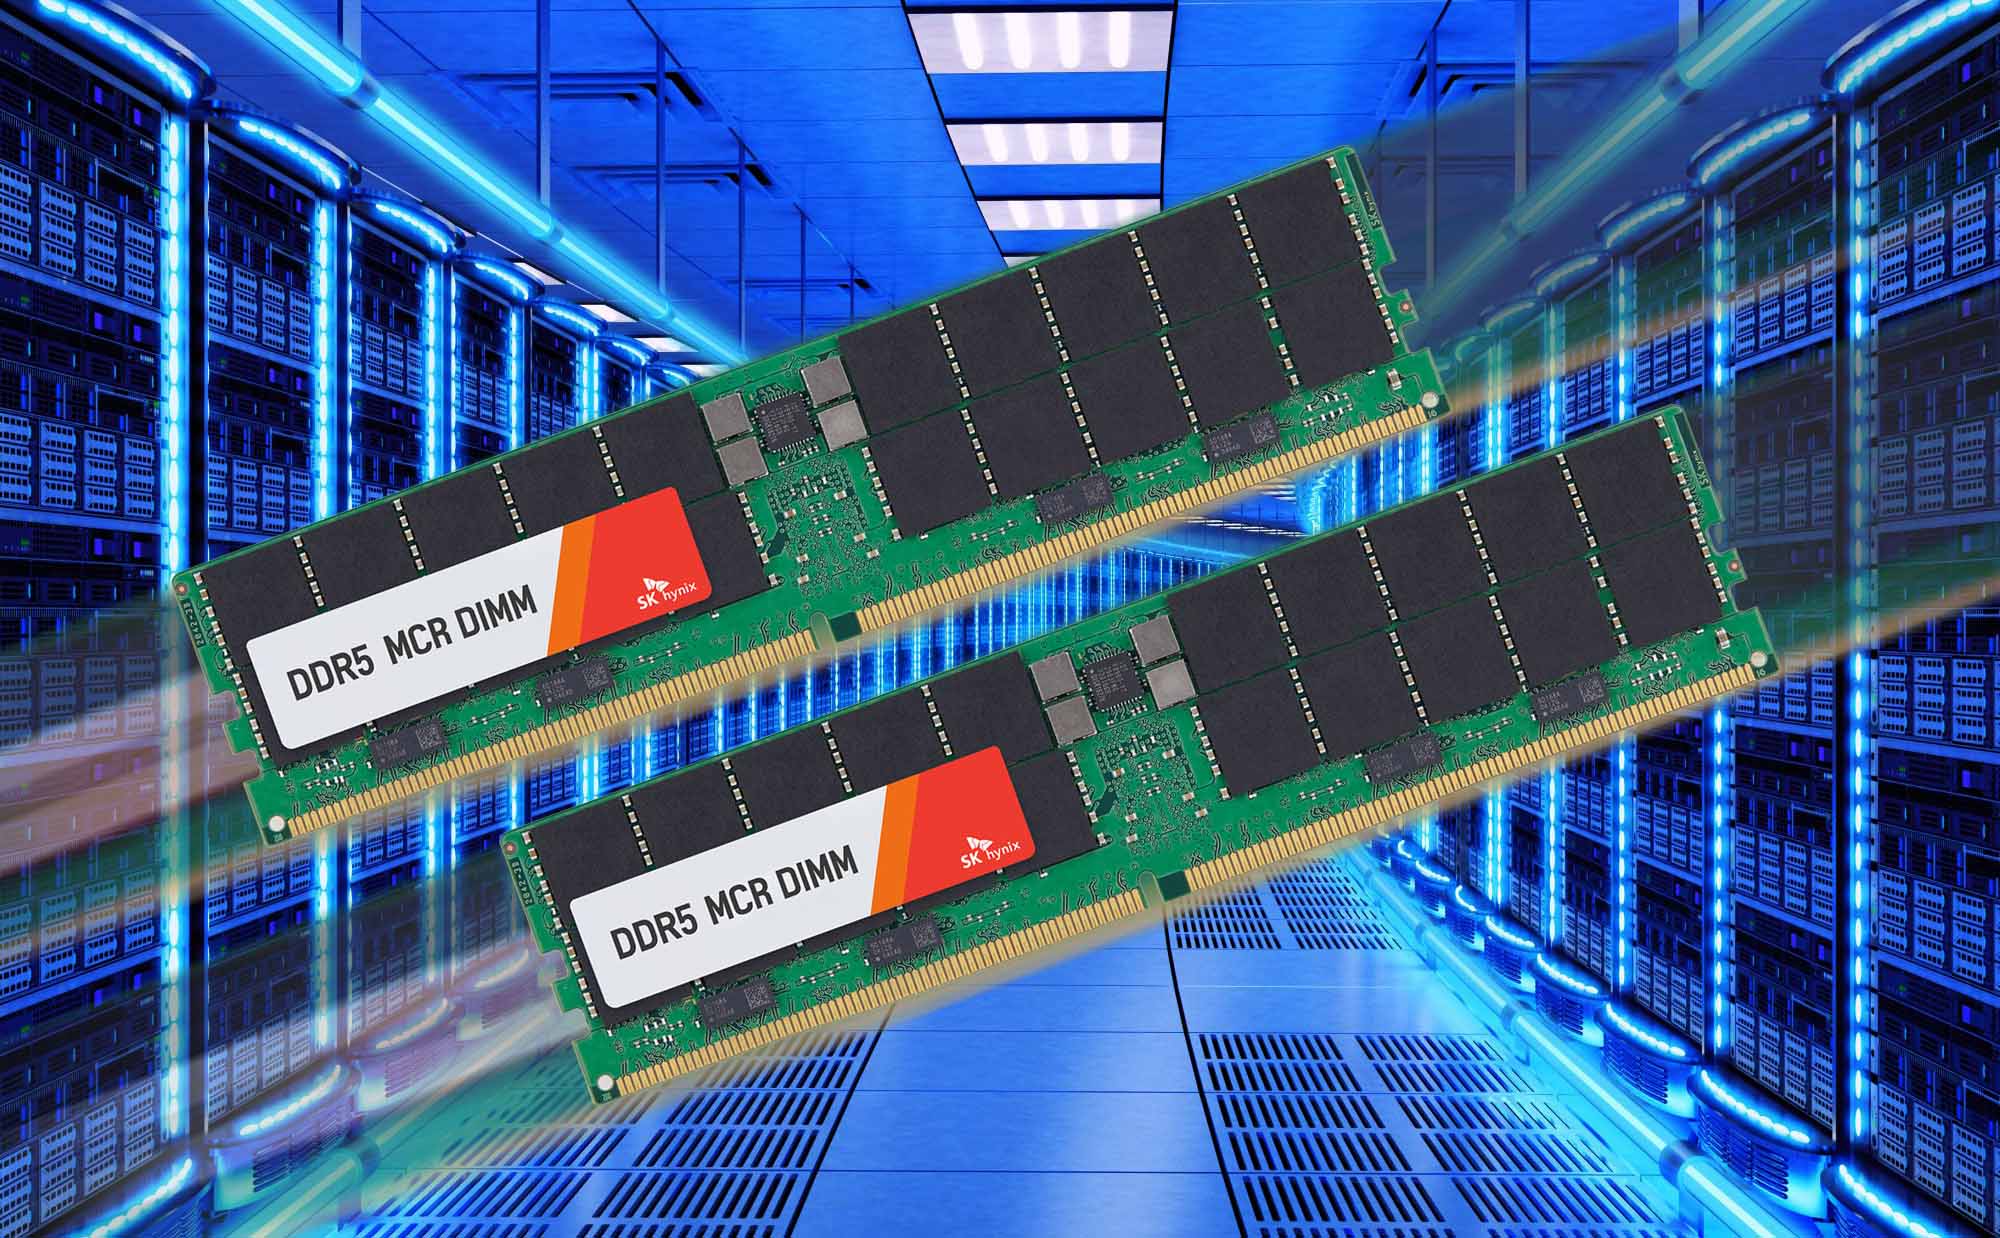 SK hynix phát triển MCR DIMM - DDR5 cho máy chủ nhanh nhất thế giới